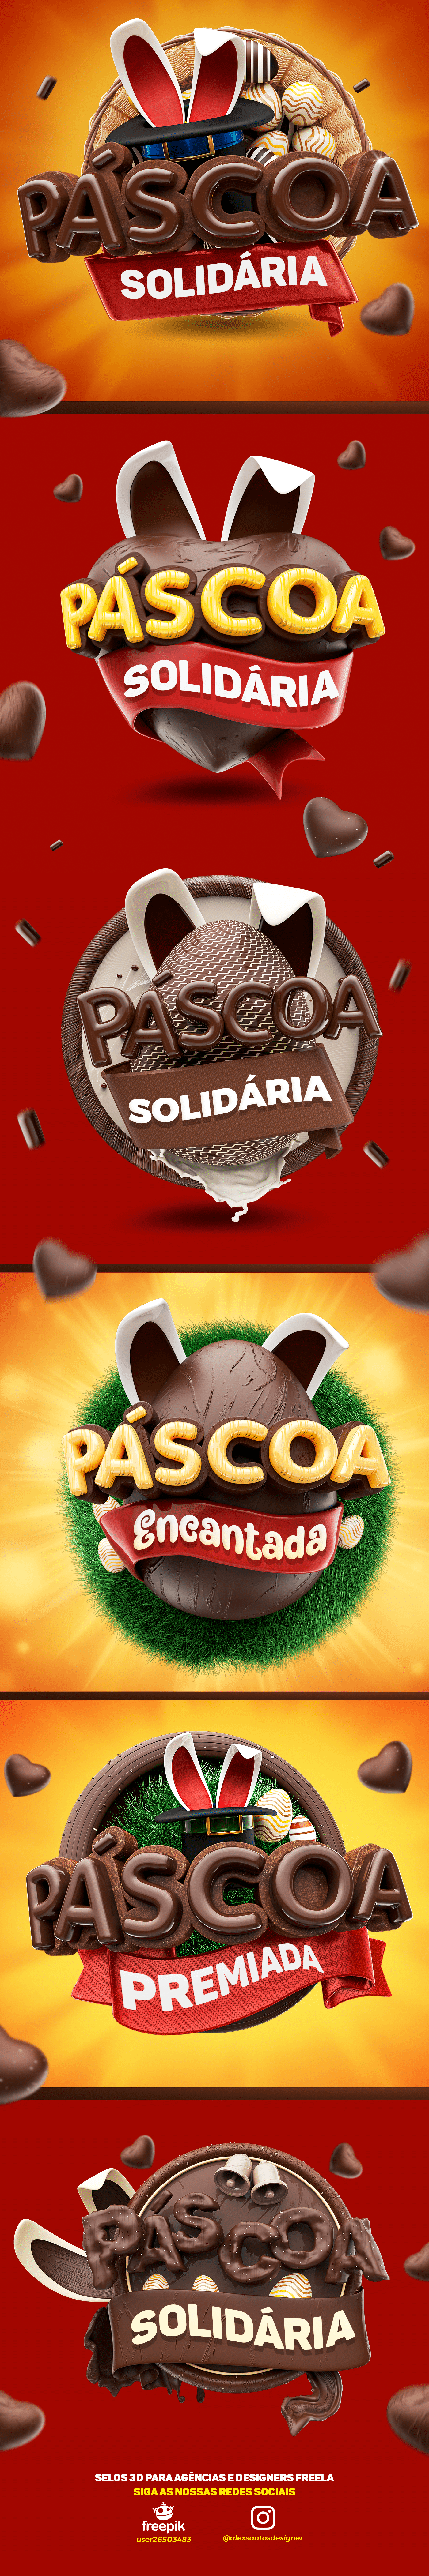 3D Cartola chocolate coelho easter day ovo de páscoa páscoa Premiada selo 3d solidariedade